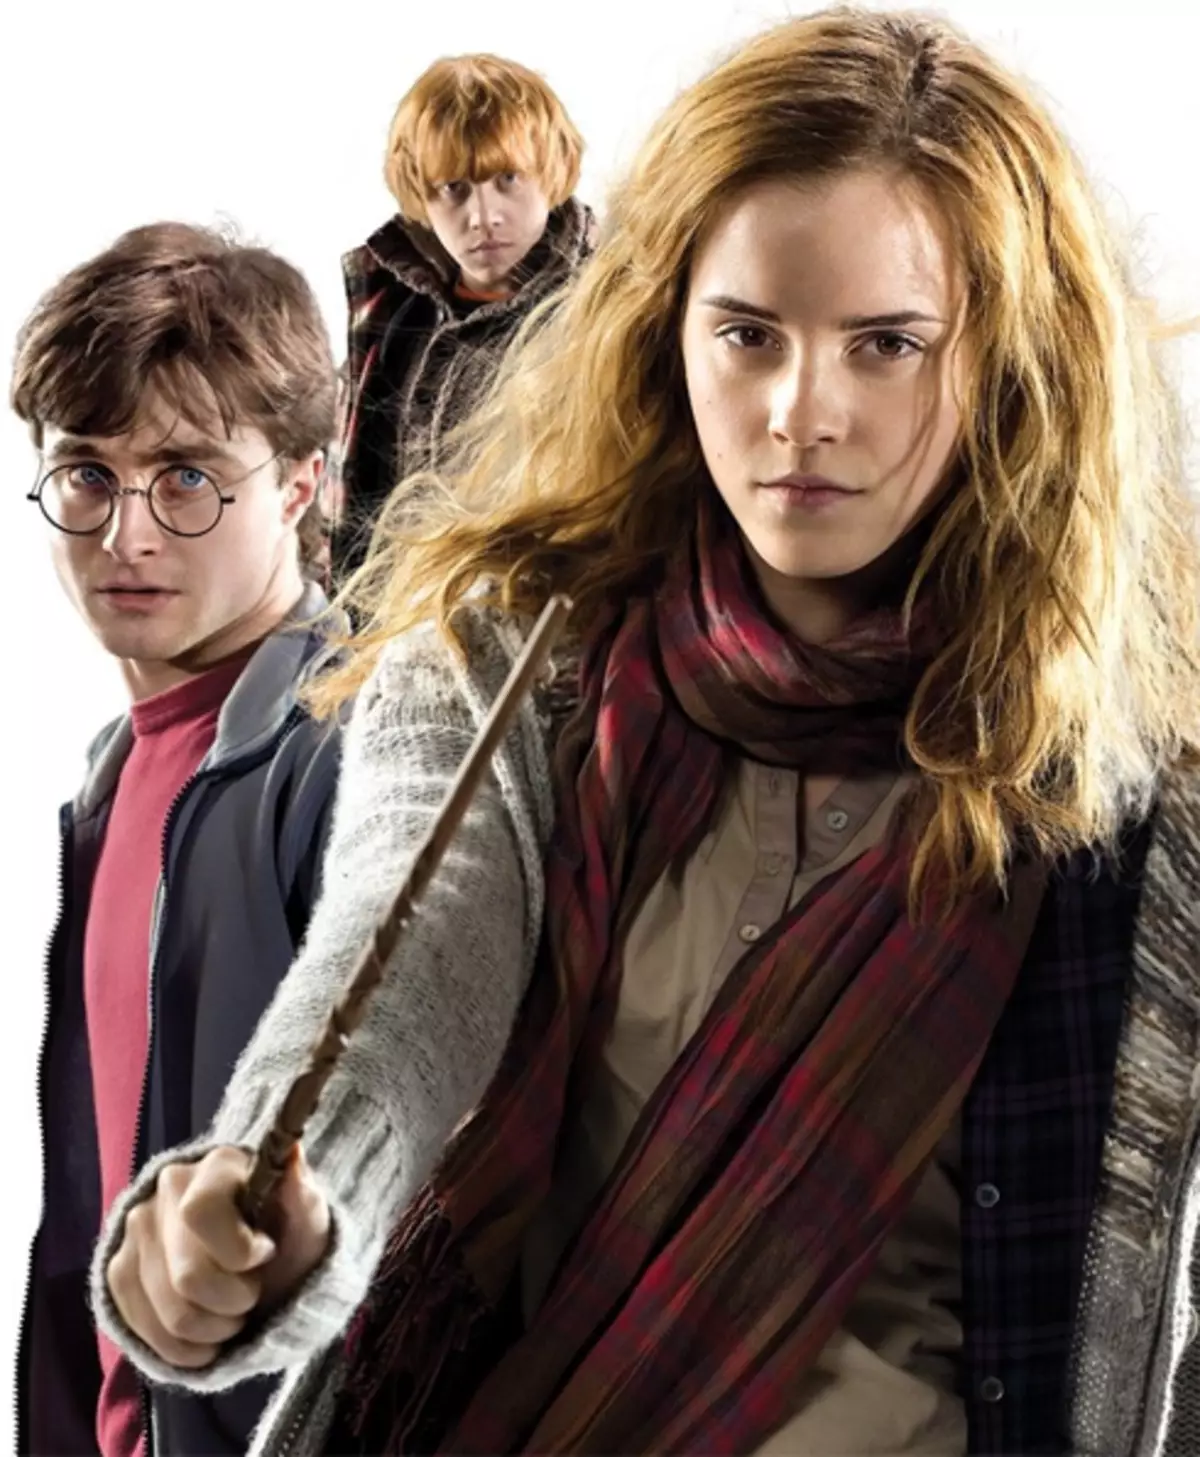 Emma Watson, Daniel Radcliffe da Ruper Rpert Green kuma ya kasance don masu sauraro da farko sun fifita daga Harry Potter